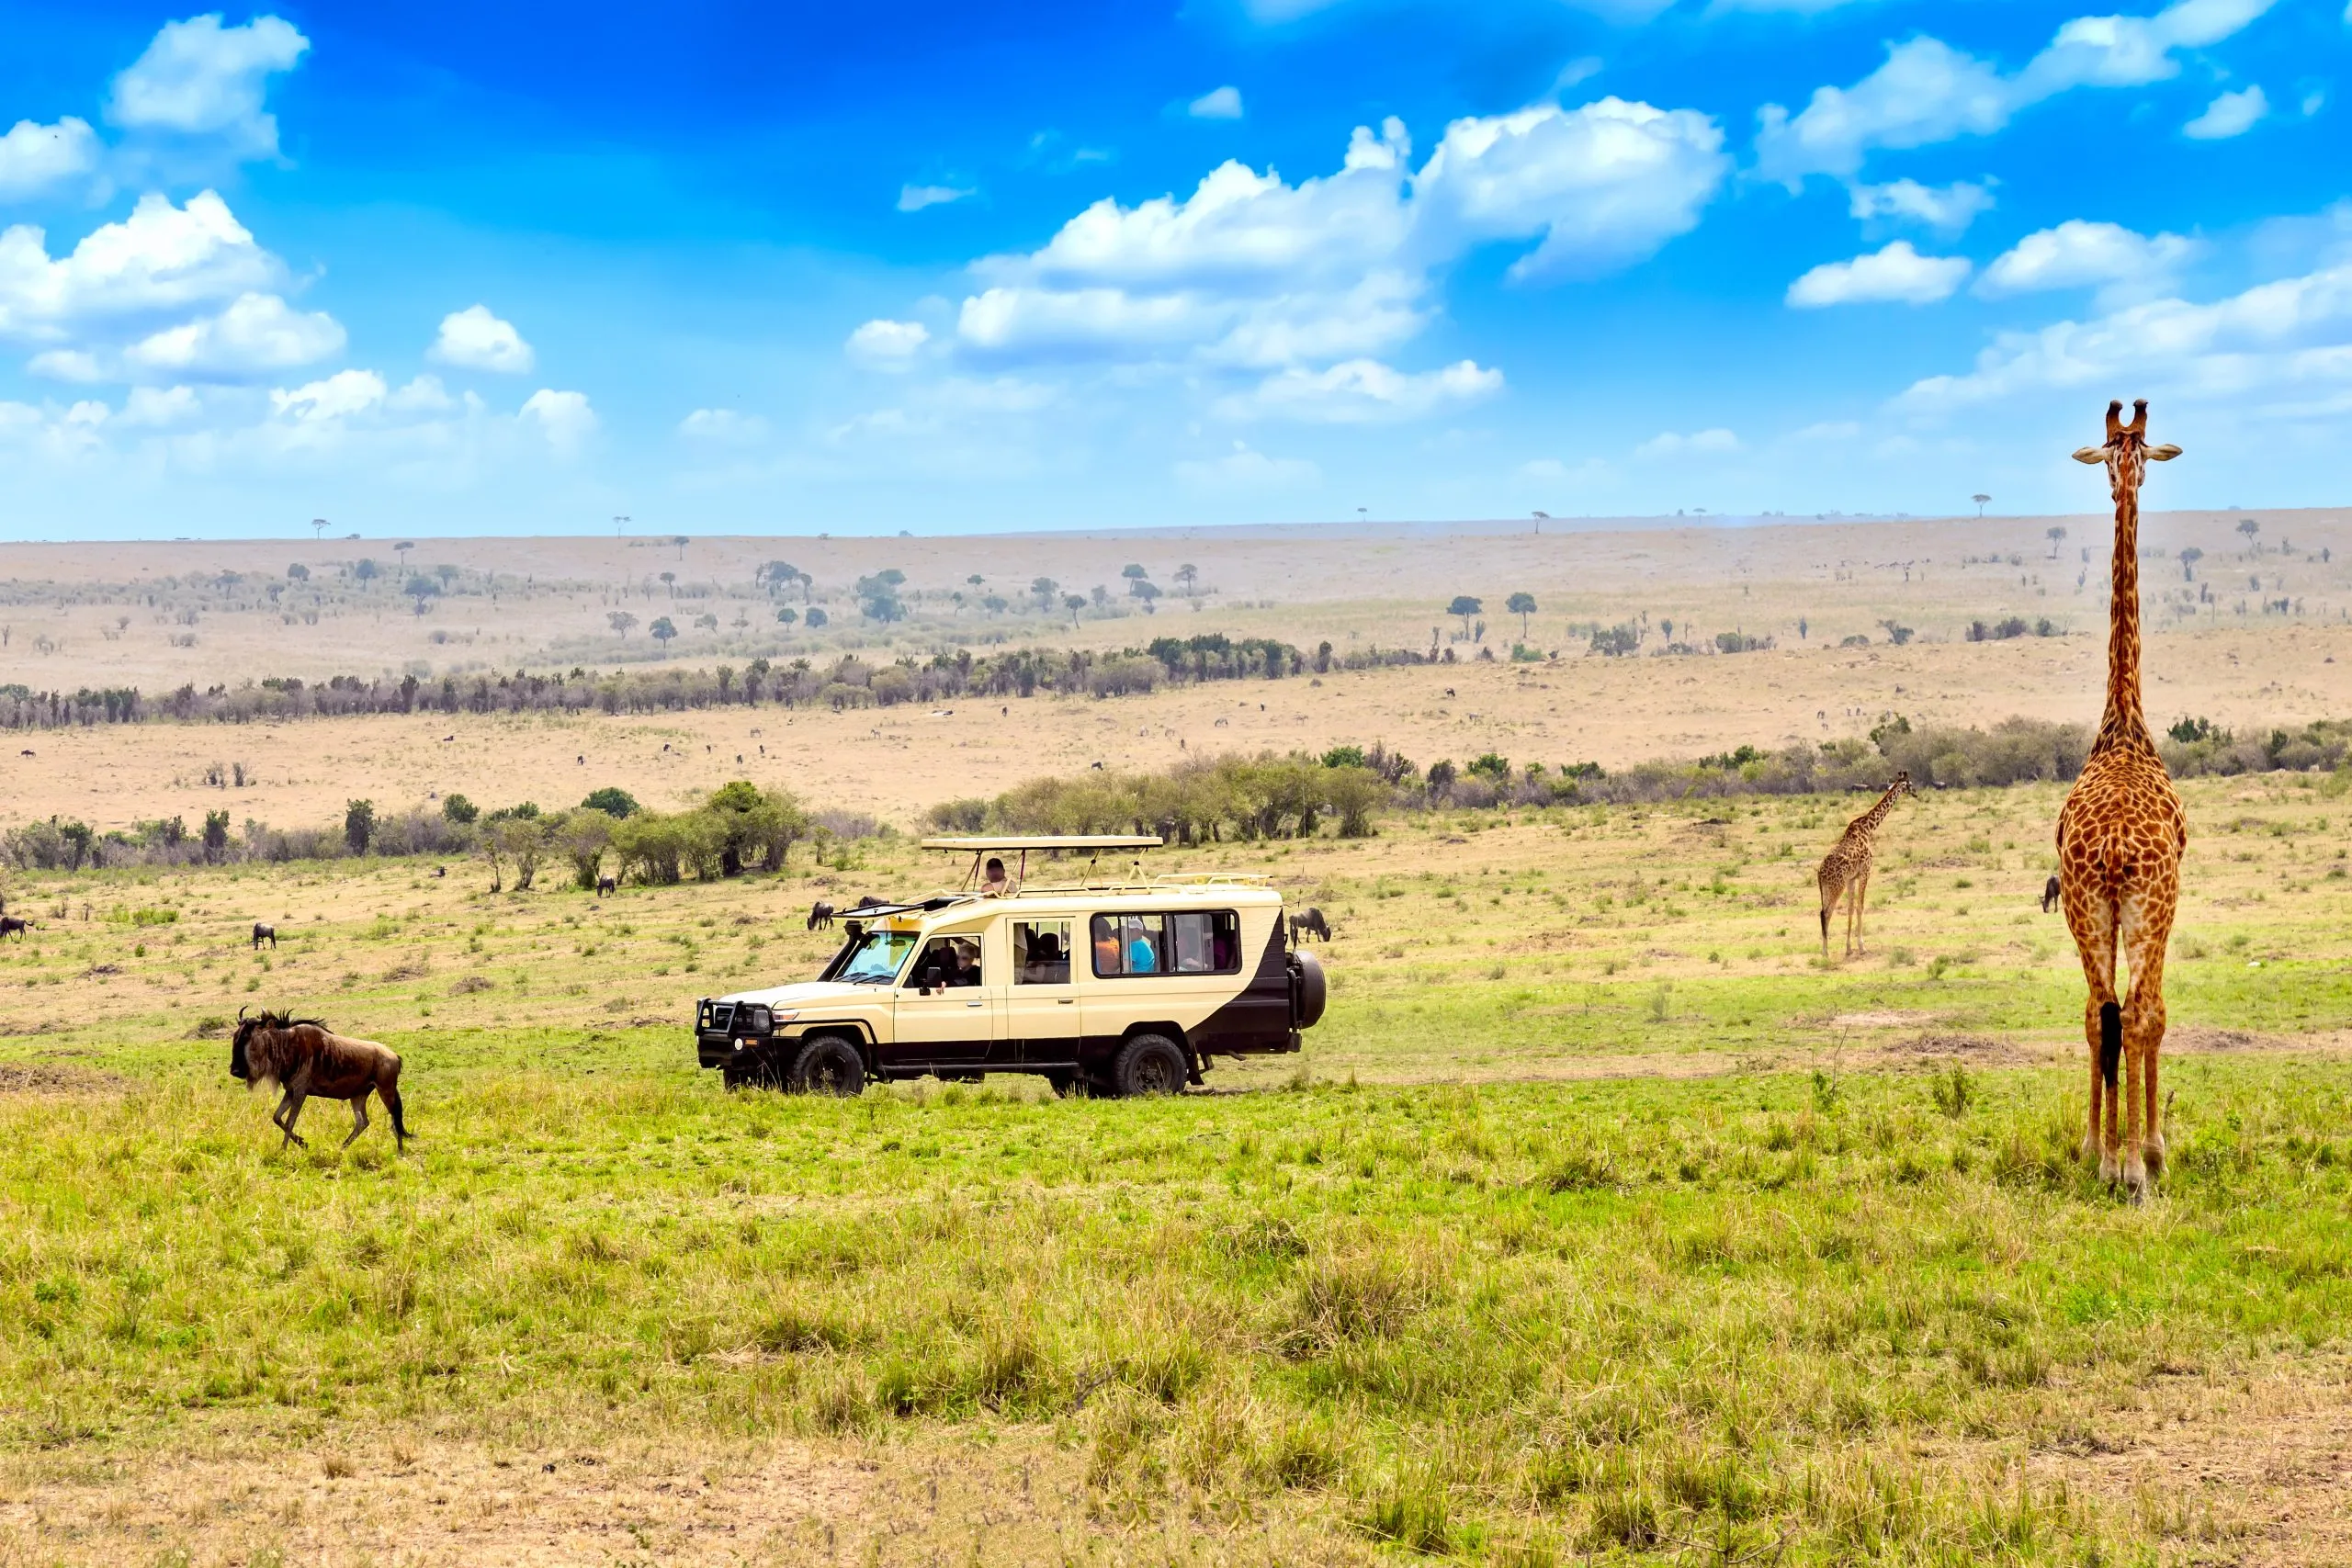 Vild giraff och gnu nära safaribil i nationalparken Masai Mara, Kenya. Safari koncept. Afrikanska resor landskap